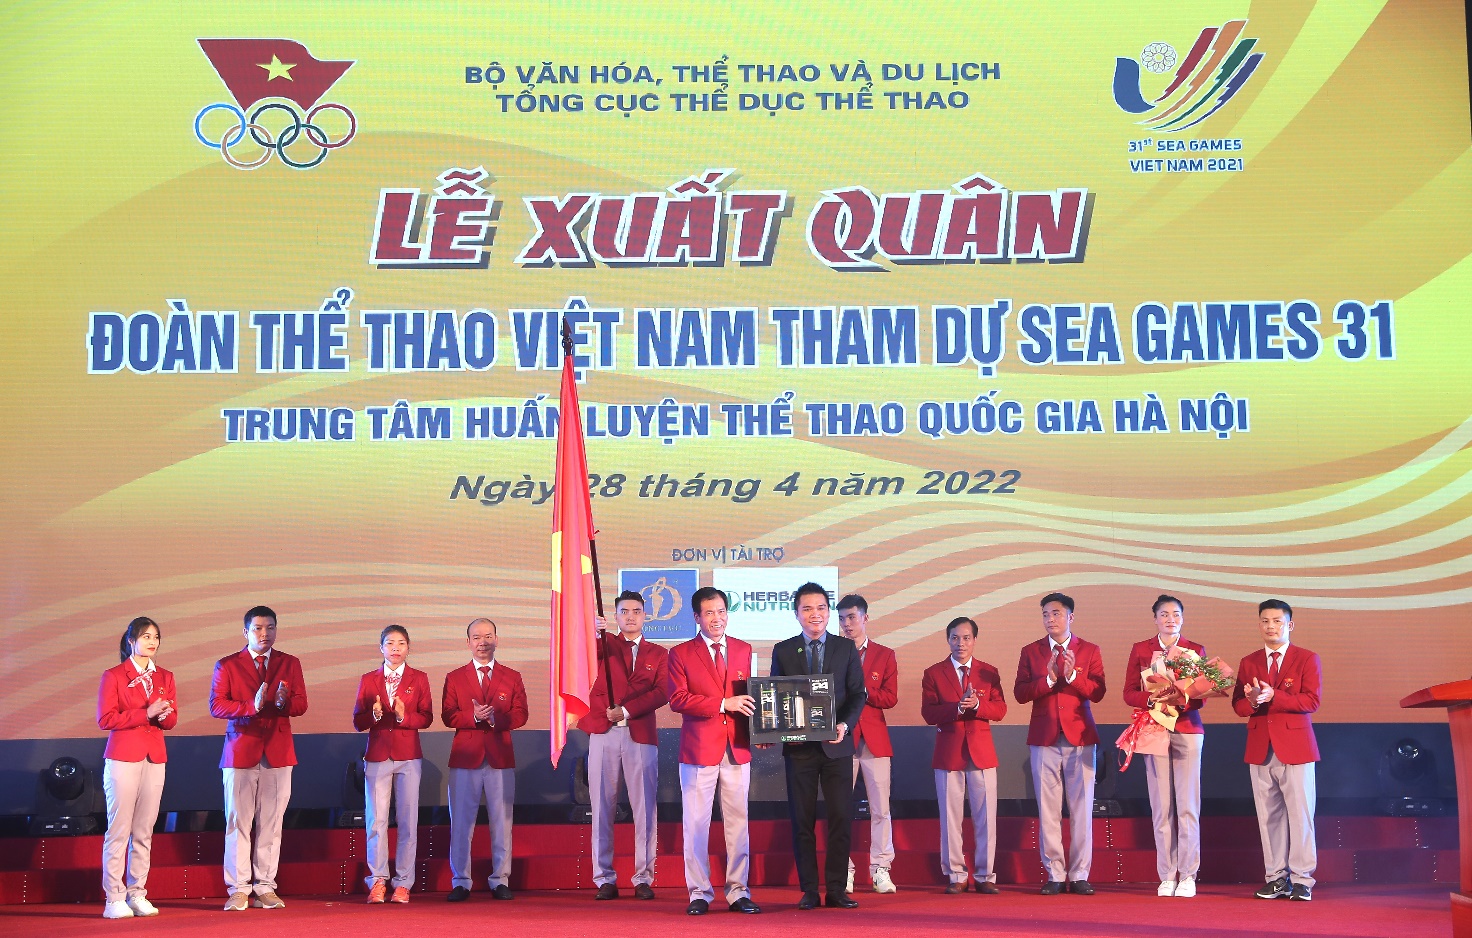 Đại diện Herbalife Việt Nam trao tặng bộ sản phẩm dinh dưỡng tới trưởng đoàn TTVN tại lễ xuất quân Đoàn TTVN tham dự SEA Games 31 - Ảnh: Herbalife Việt Nam